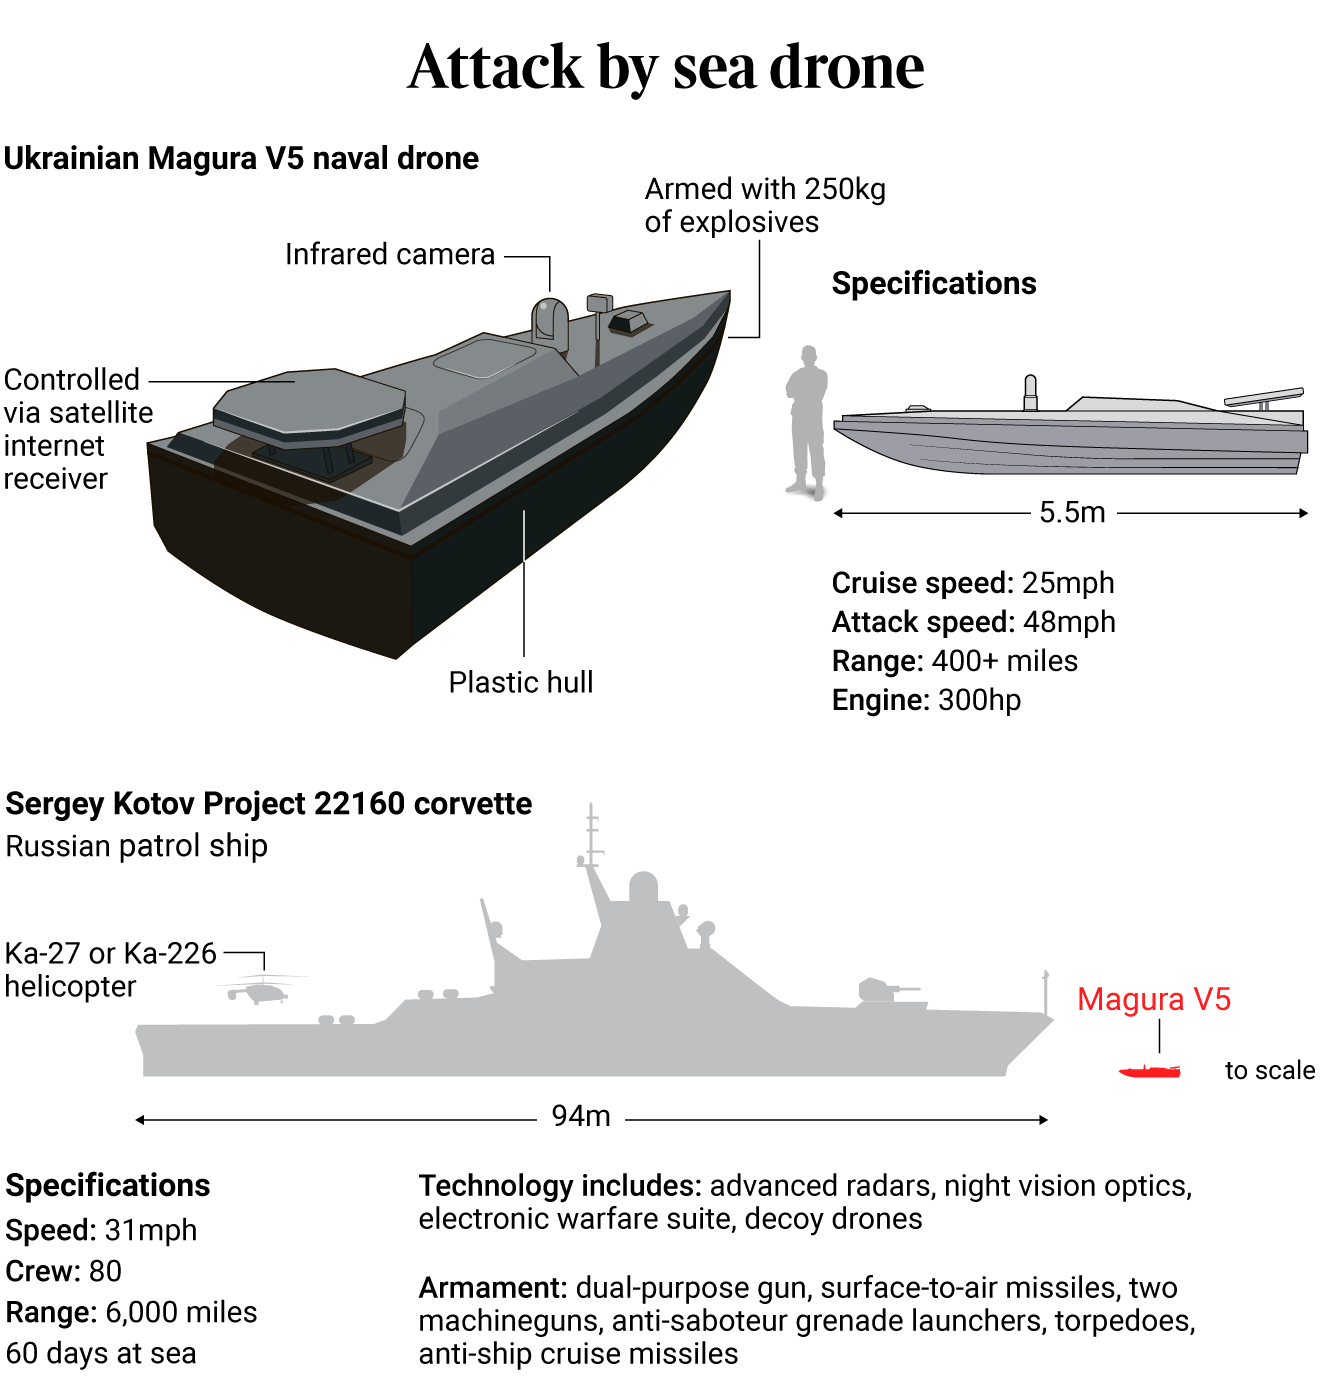 "Моя мечта – уничтожить весь флот РФ": военный ГУР рассказал о применении морских дронов в войне. Фото